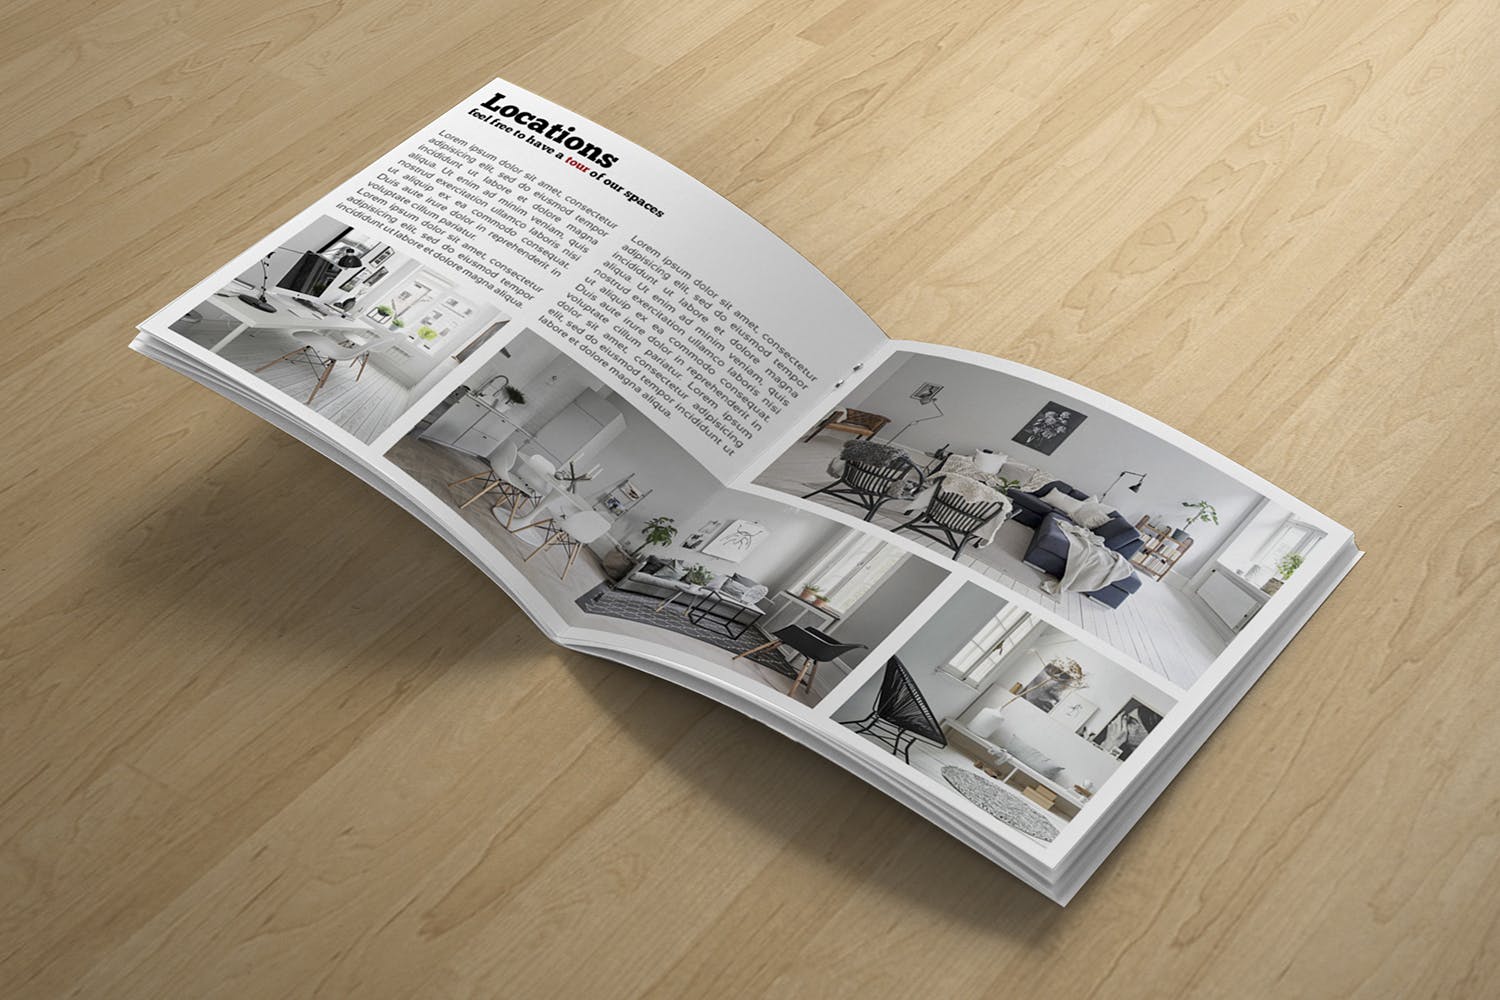 产品手册方形画册内页版式设计特写样机 Square Brochure Open Pages Mockup设计素材模板